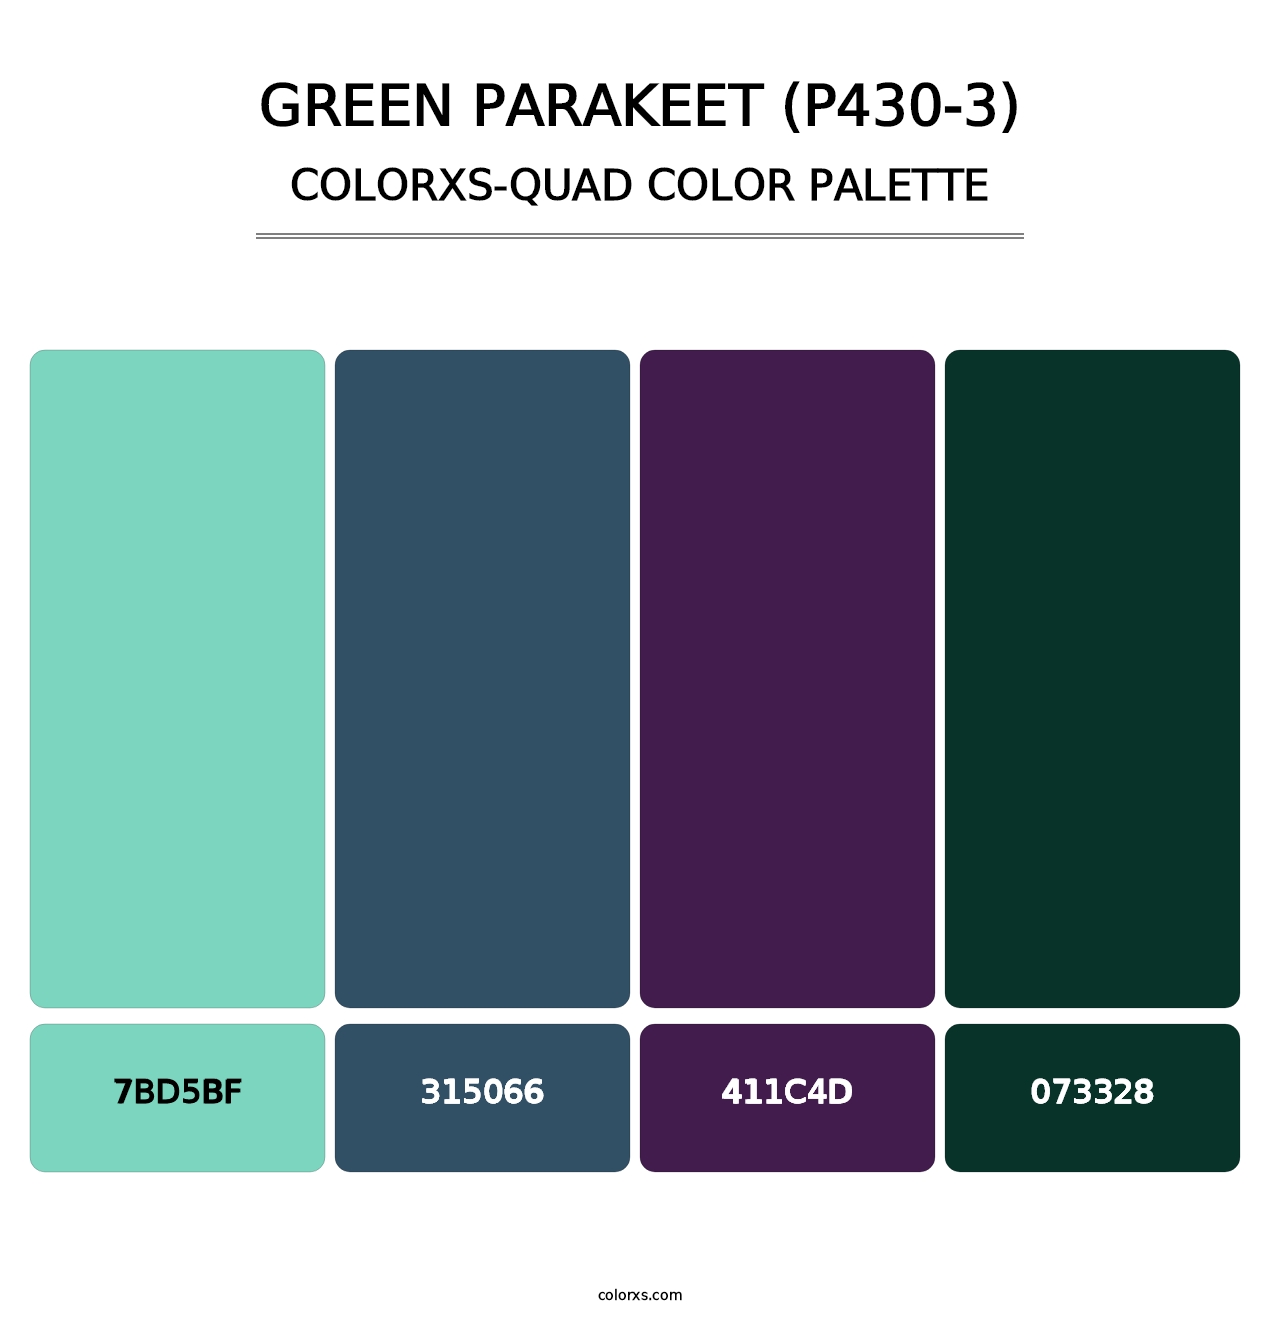 Green Parakeet (P430-3) - Colorxs Quad Palette